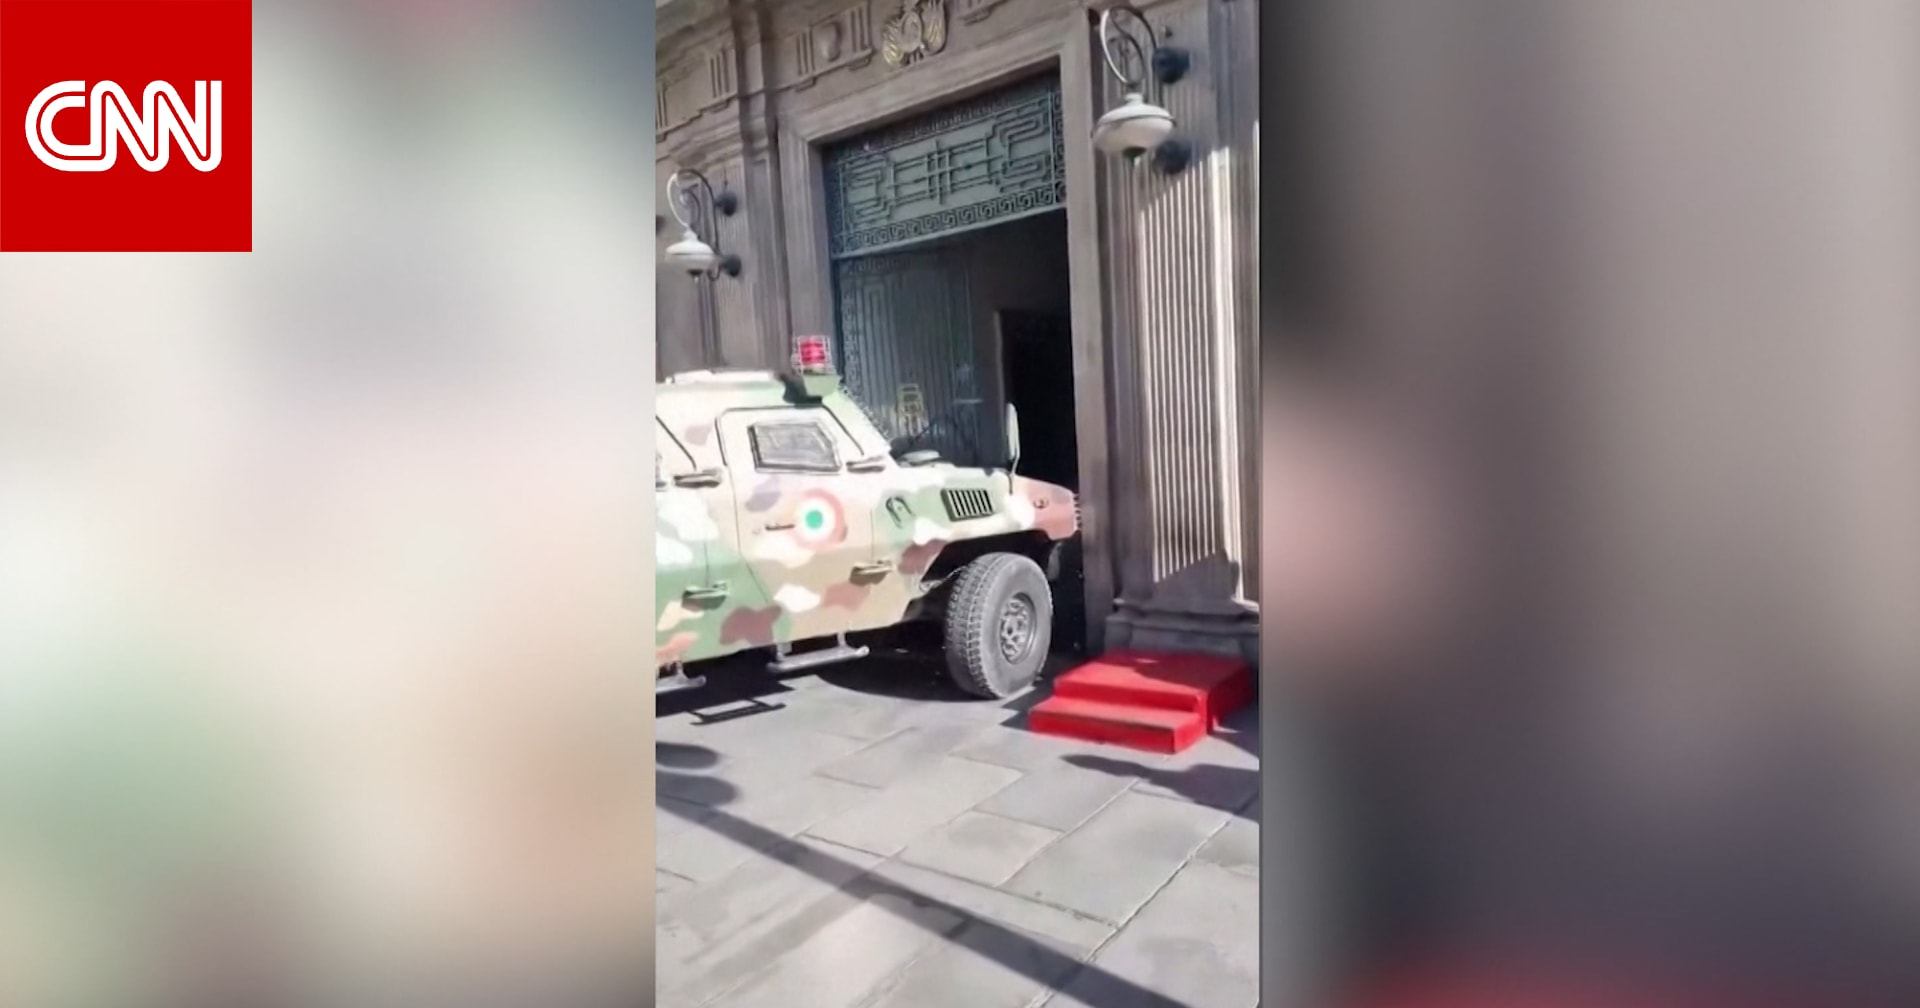 فيديو يظهر مركبة عسكرية تحاول اقتحام قصر حكومي في بوليفيا خلال محاولة الانقلاب الفاشل